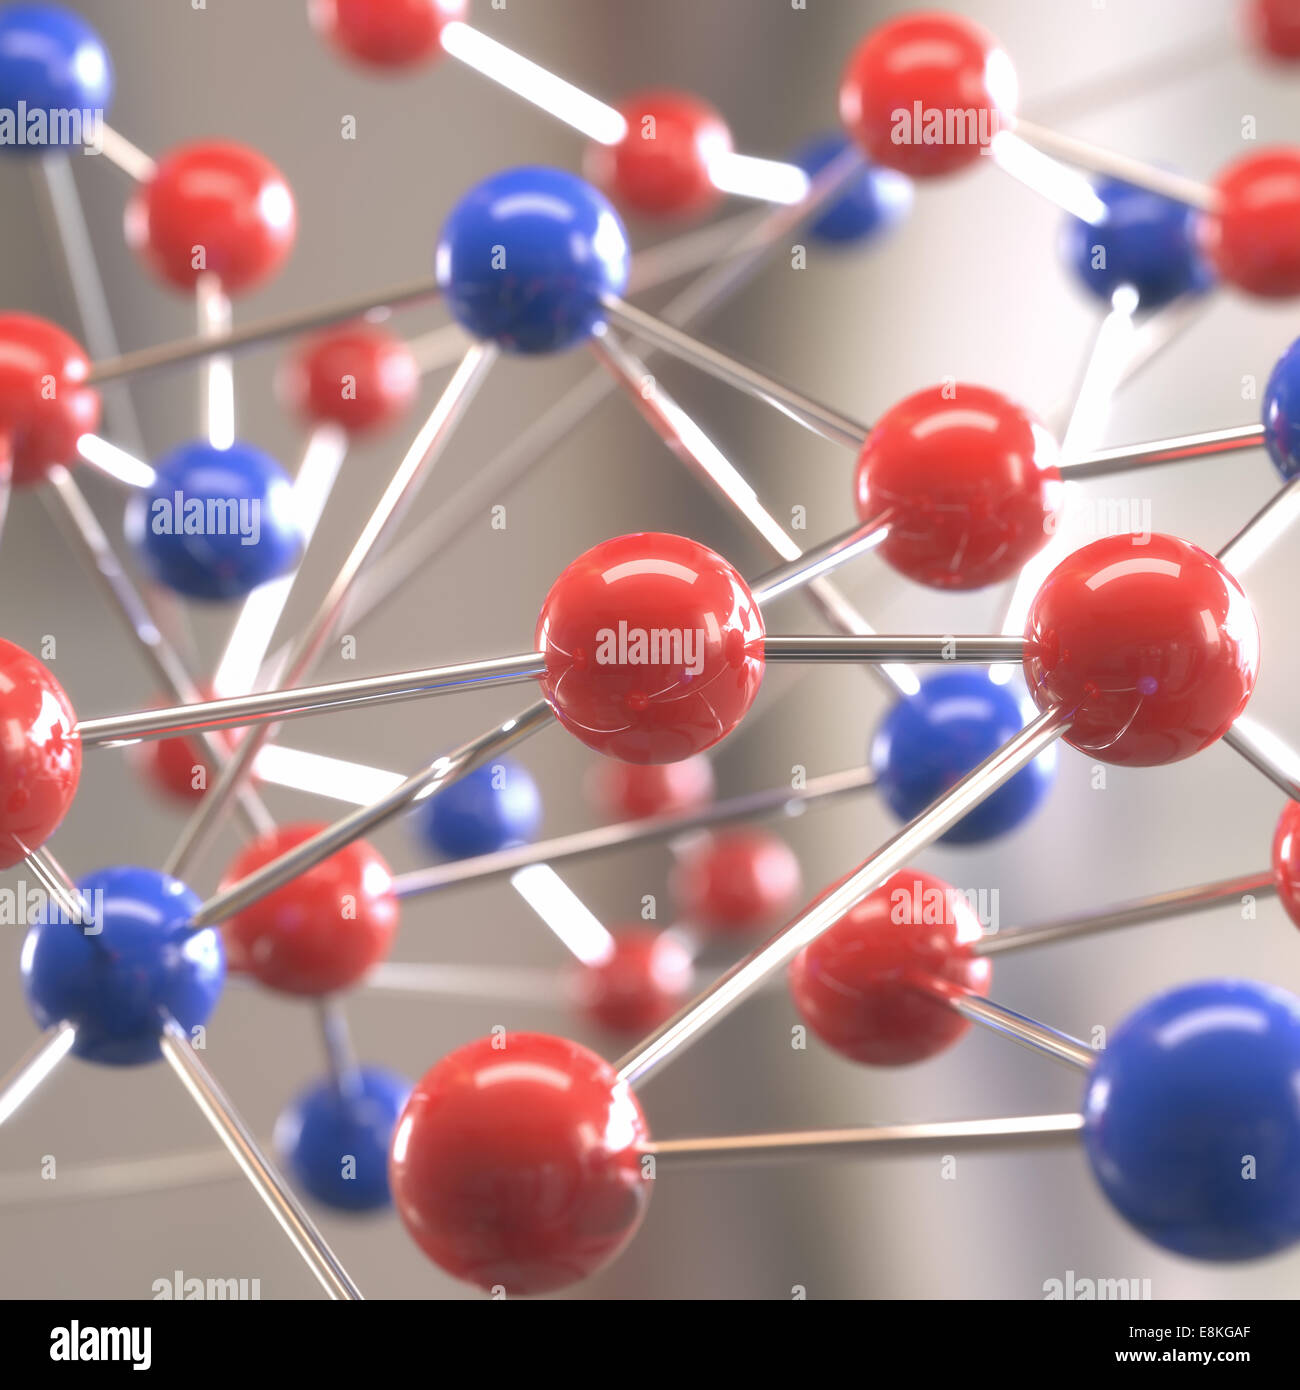 Molekulare Struktur mit Kugeln mit Schärfentiefe miteinander verbunden. Stockfoto